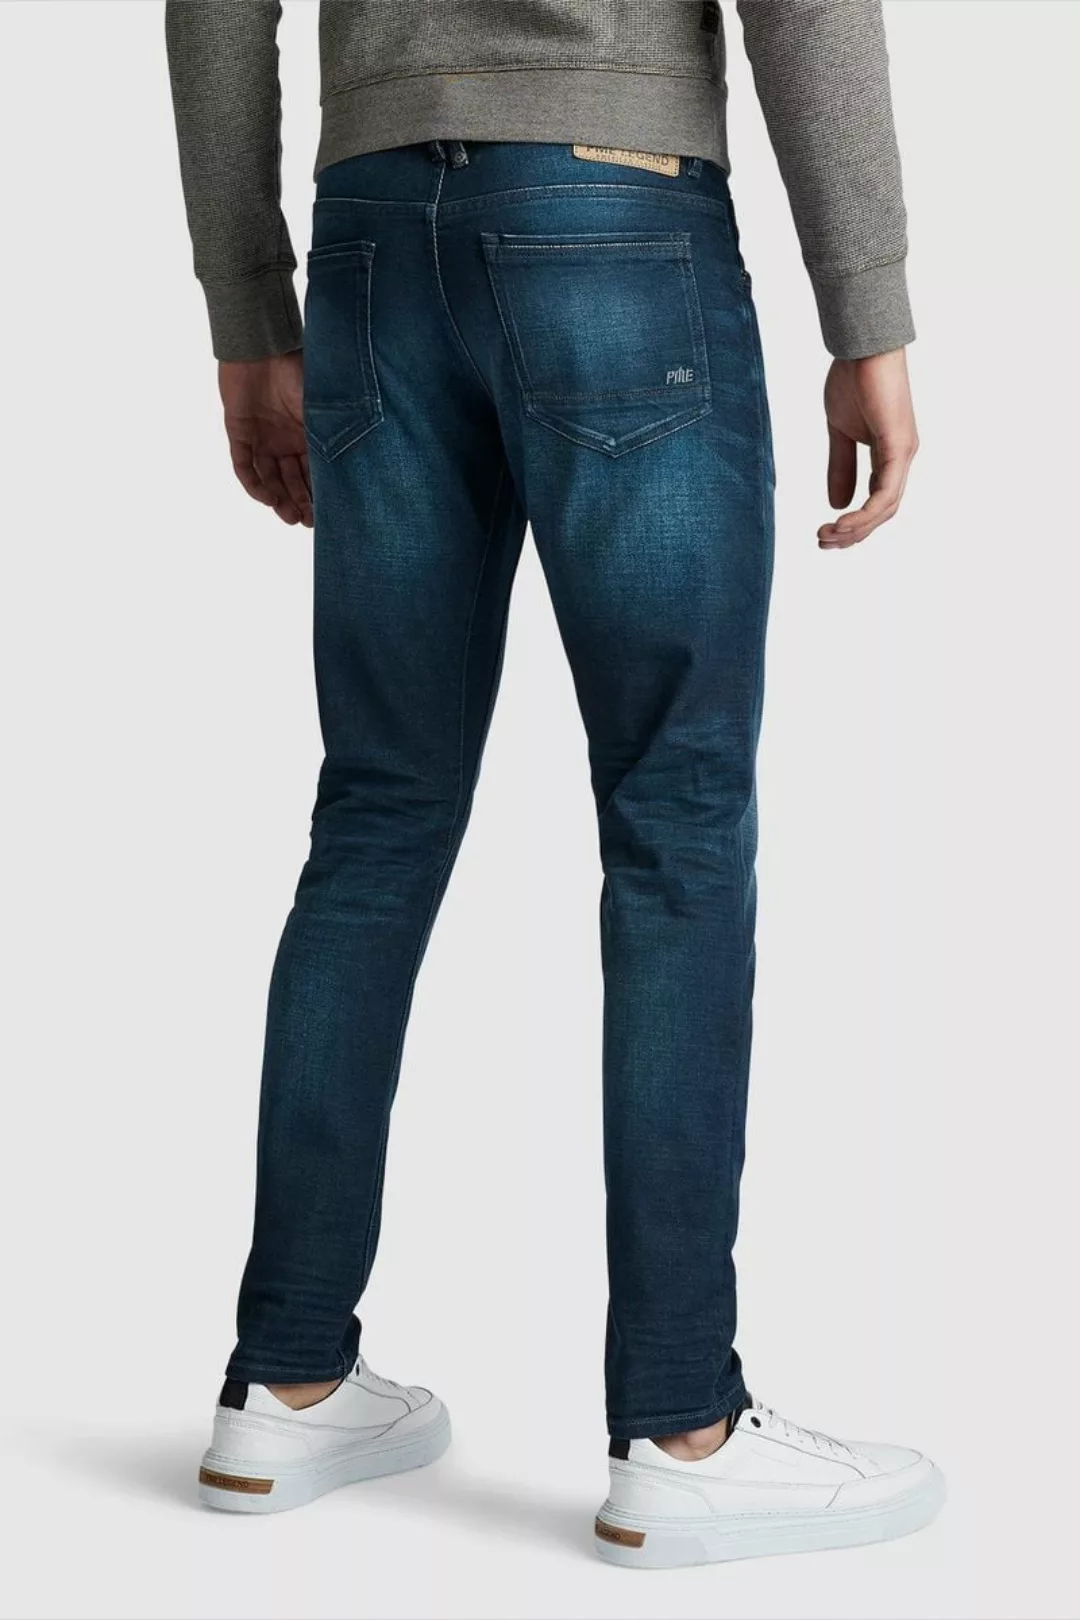 PME Legend Tailwheel Jeans Dark Shadow Blau - Größe W 28 - L 32 günstig online kaufen